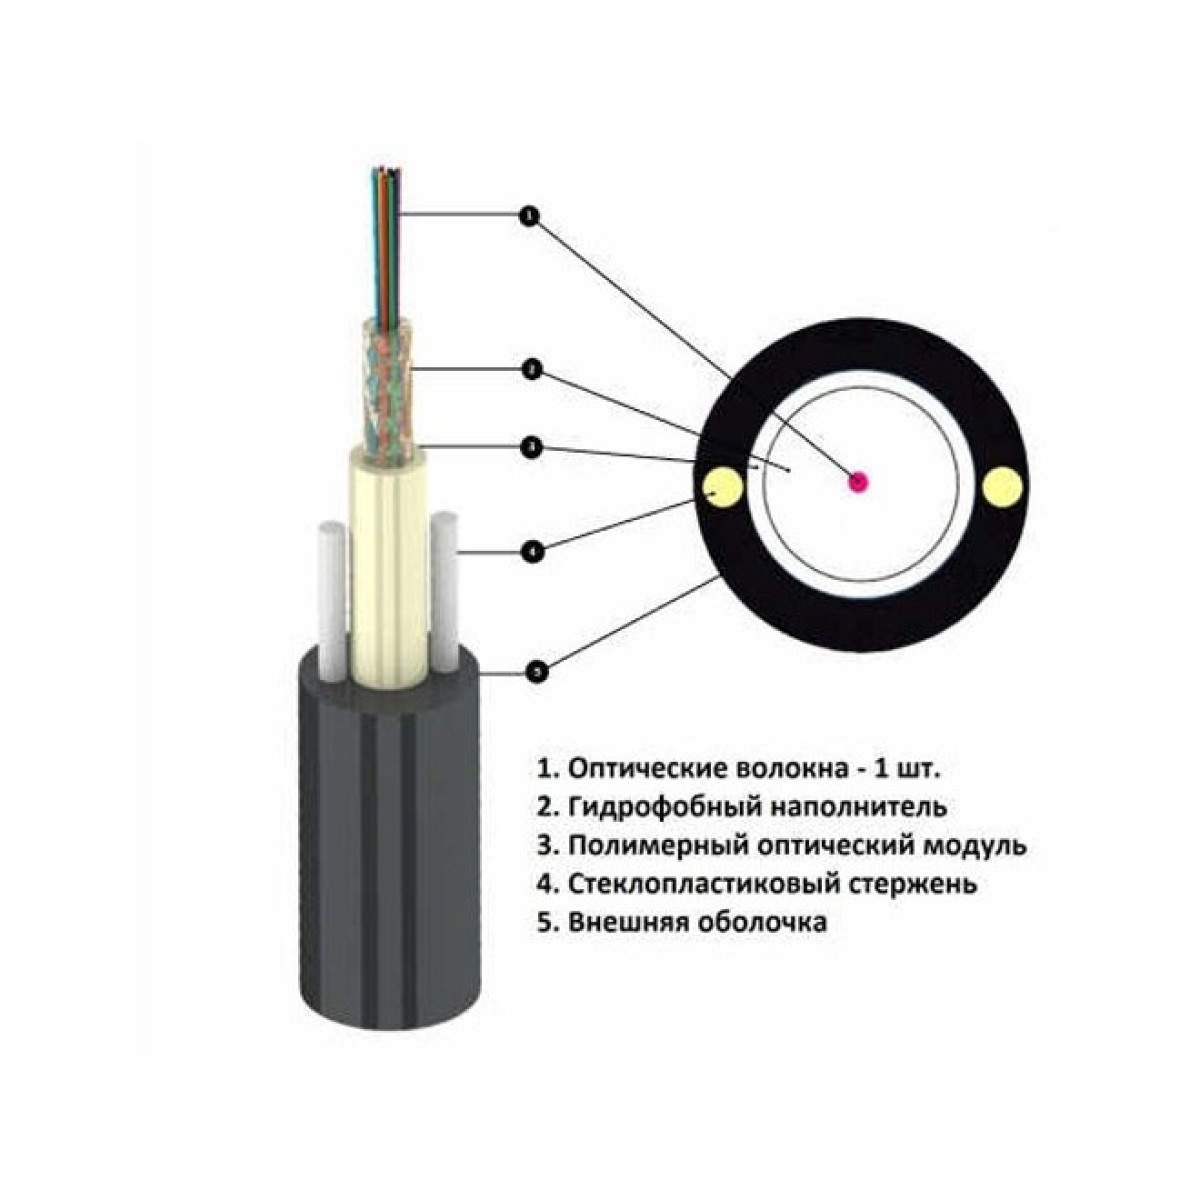 Волоконно-оптический кабель Lankore UT-001 SM ADSS 1,0кн